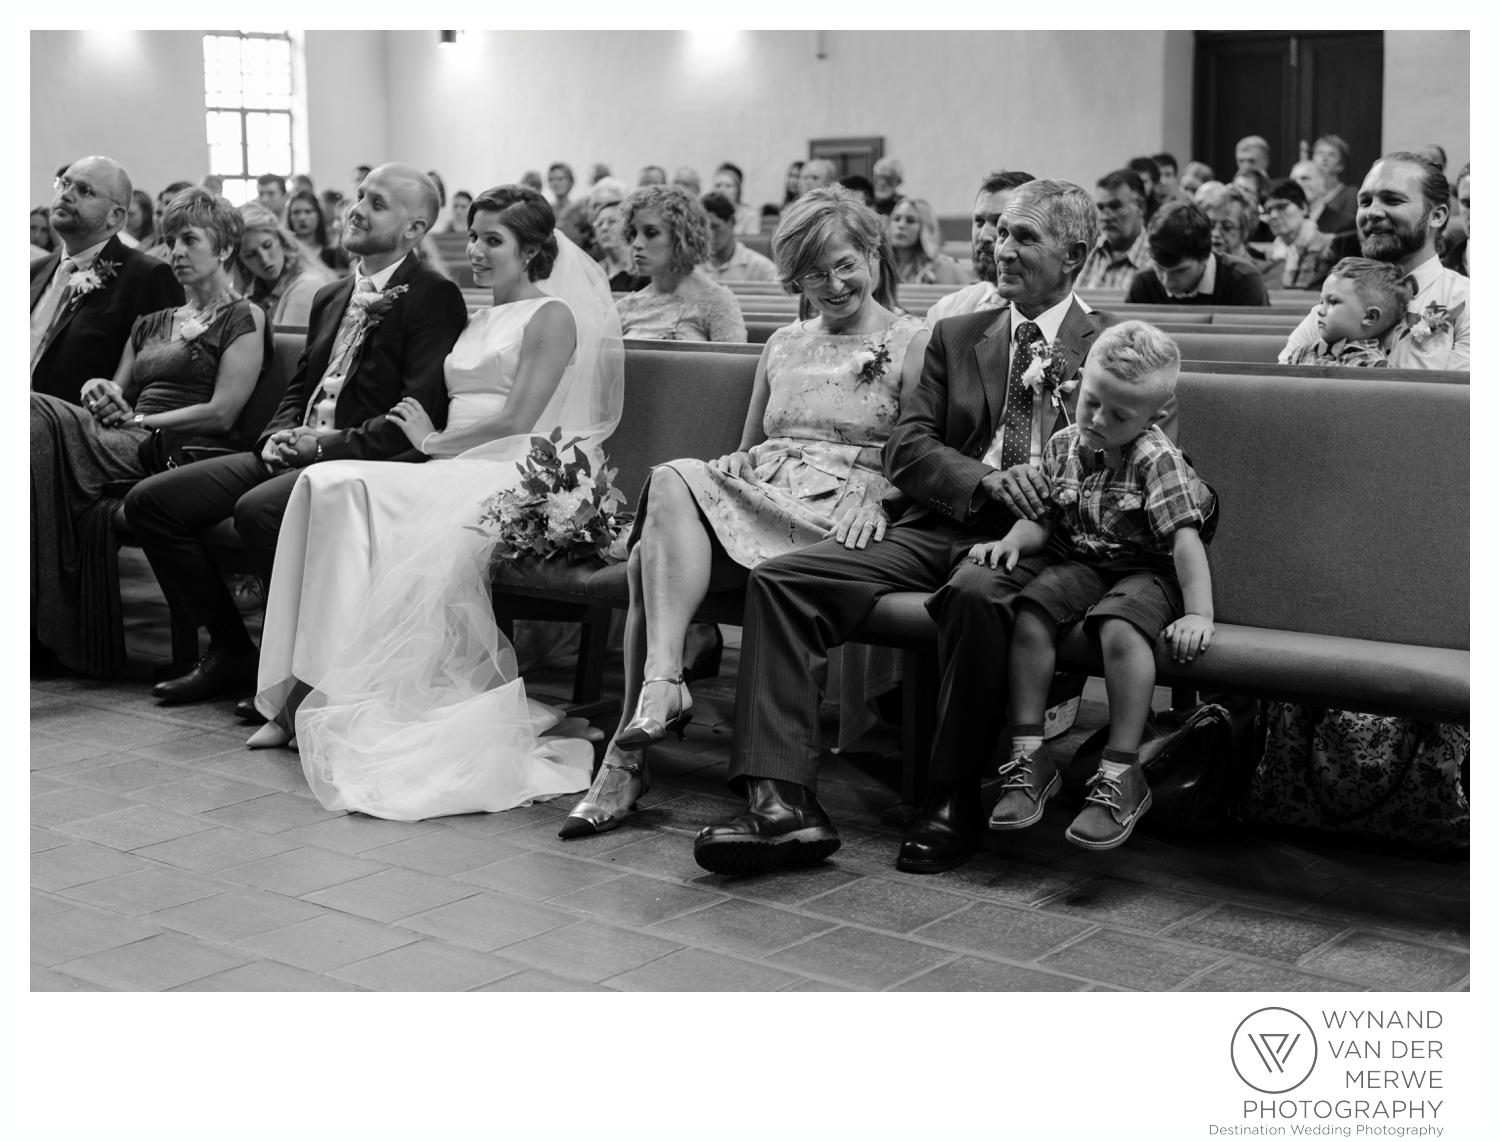 WynandvanderMerwe_weddingphotography_wedding_ingaadi_klaasjanmareli_gauteng_southafrica_2018-14.jpg